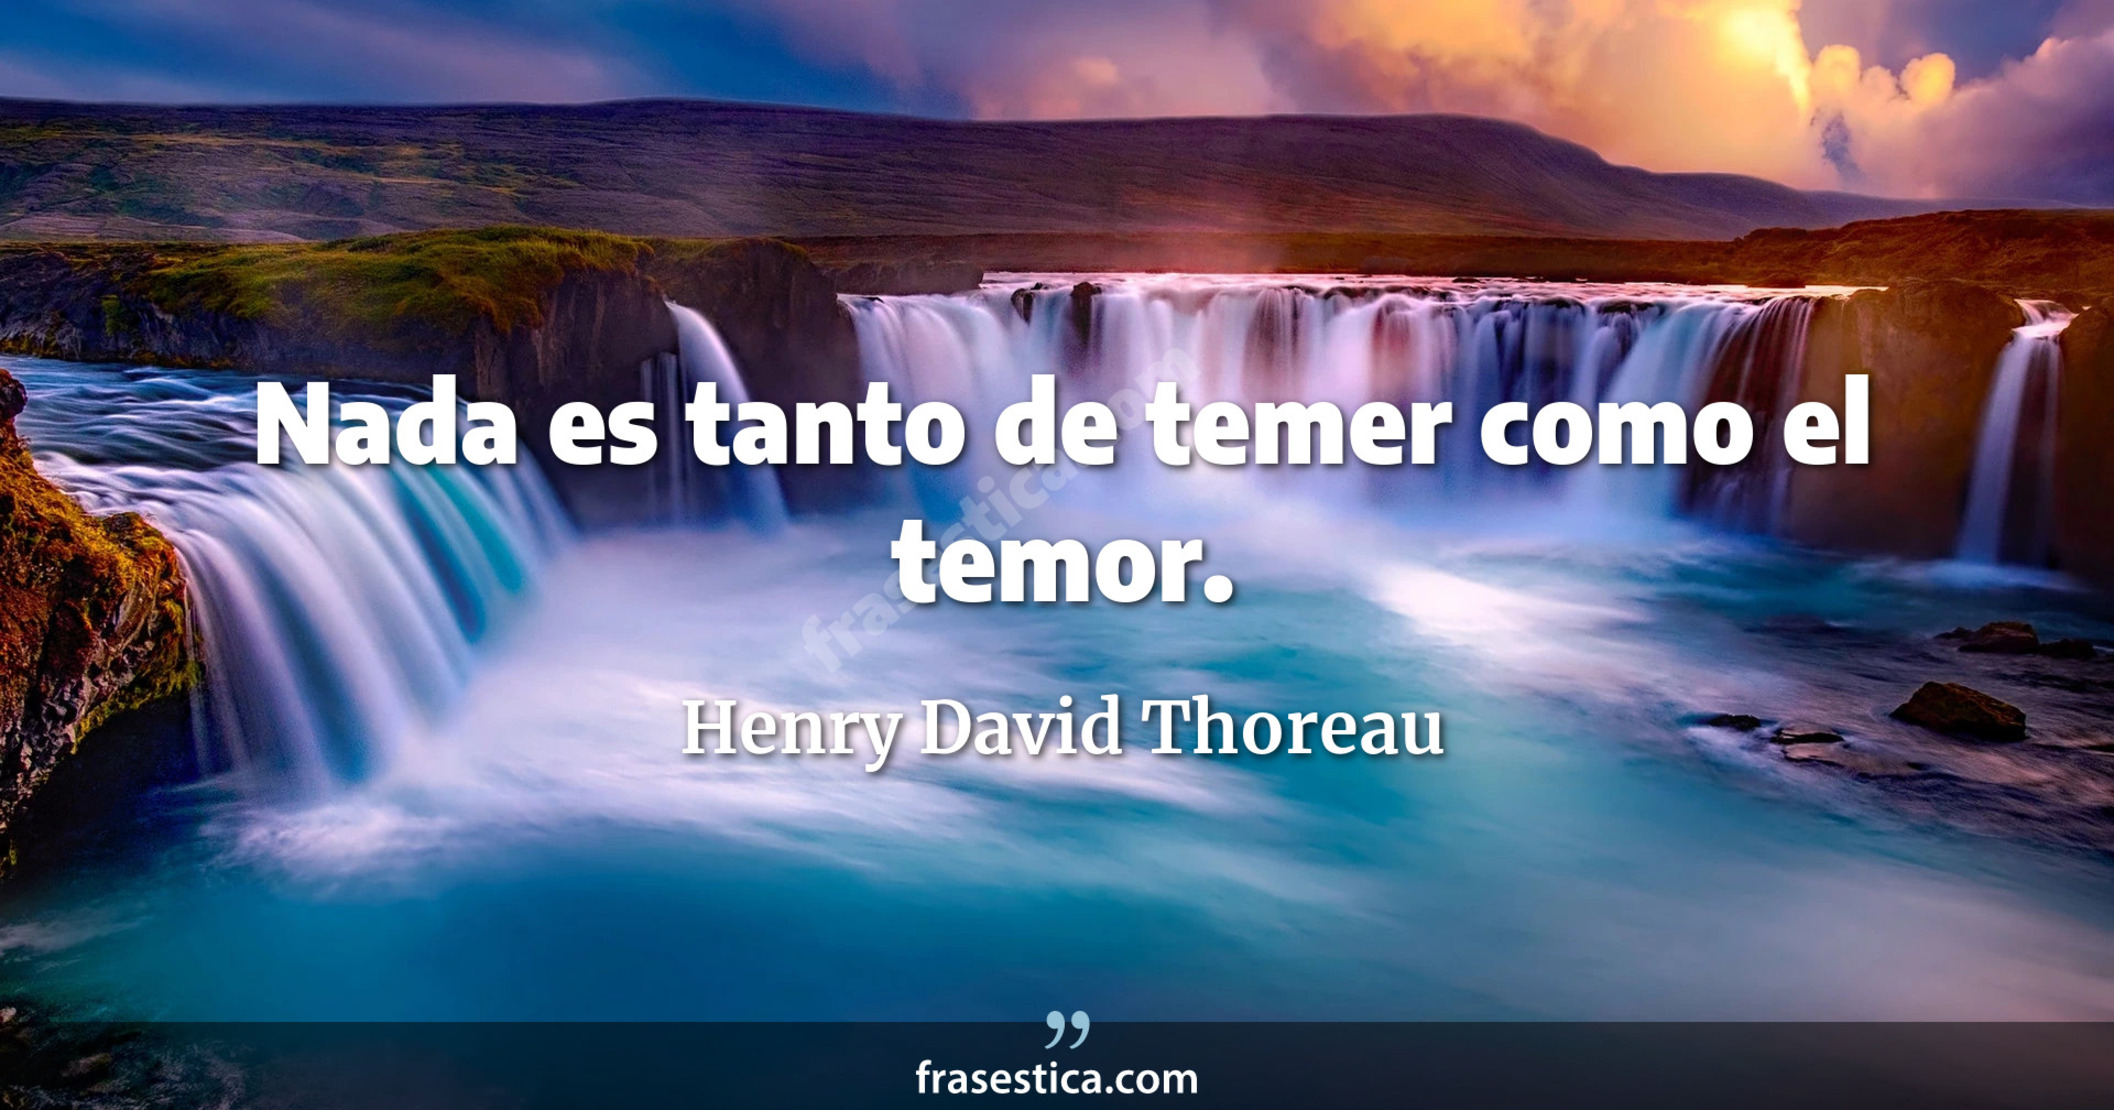 Nada es tanto de temer como el temor. - Henry David Thoreau